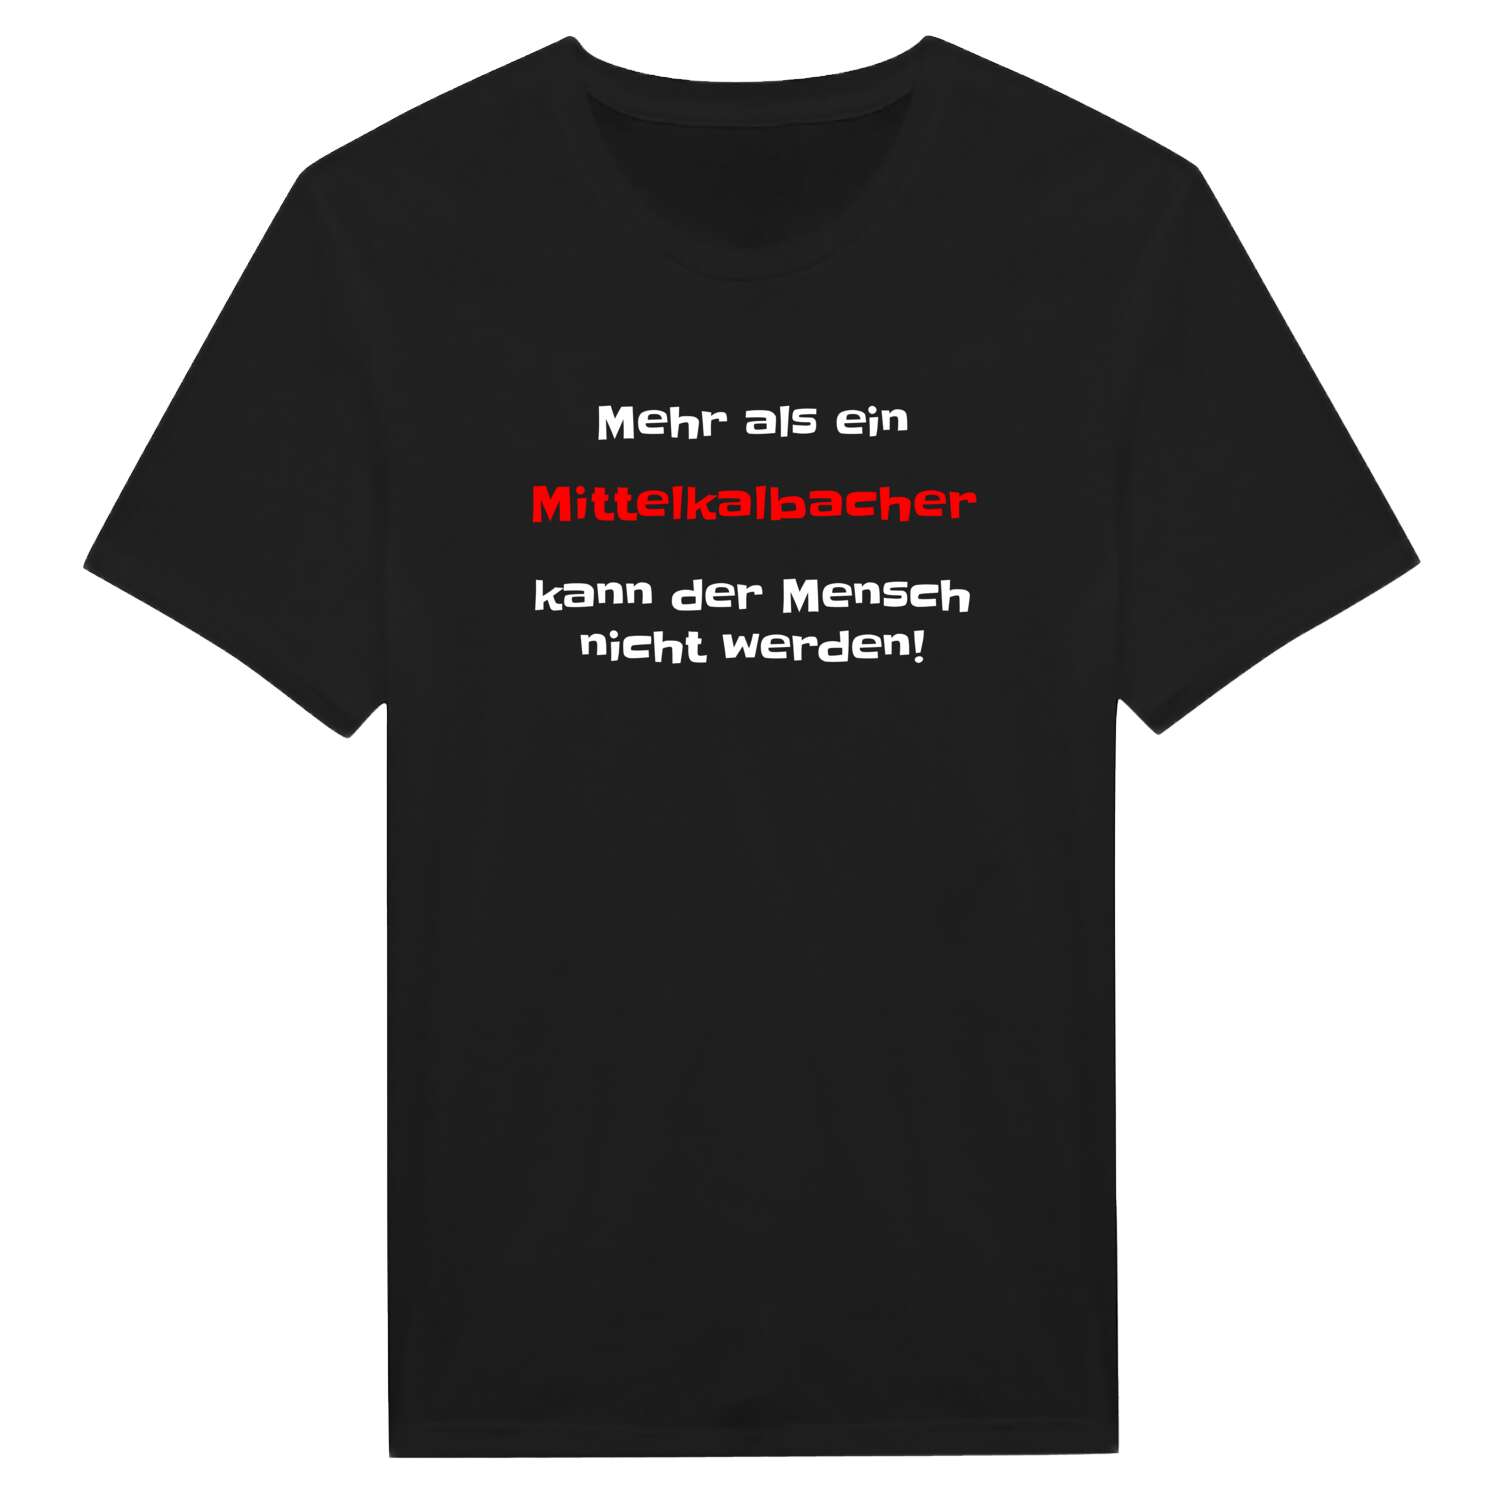 Mittelkalbach T-Shirt »Mehr als ein«